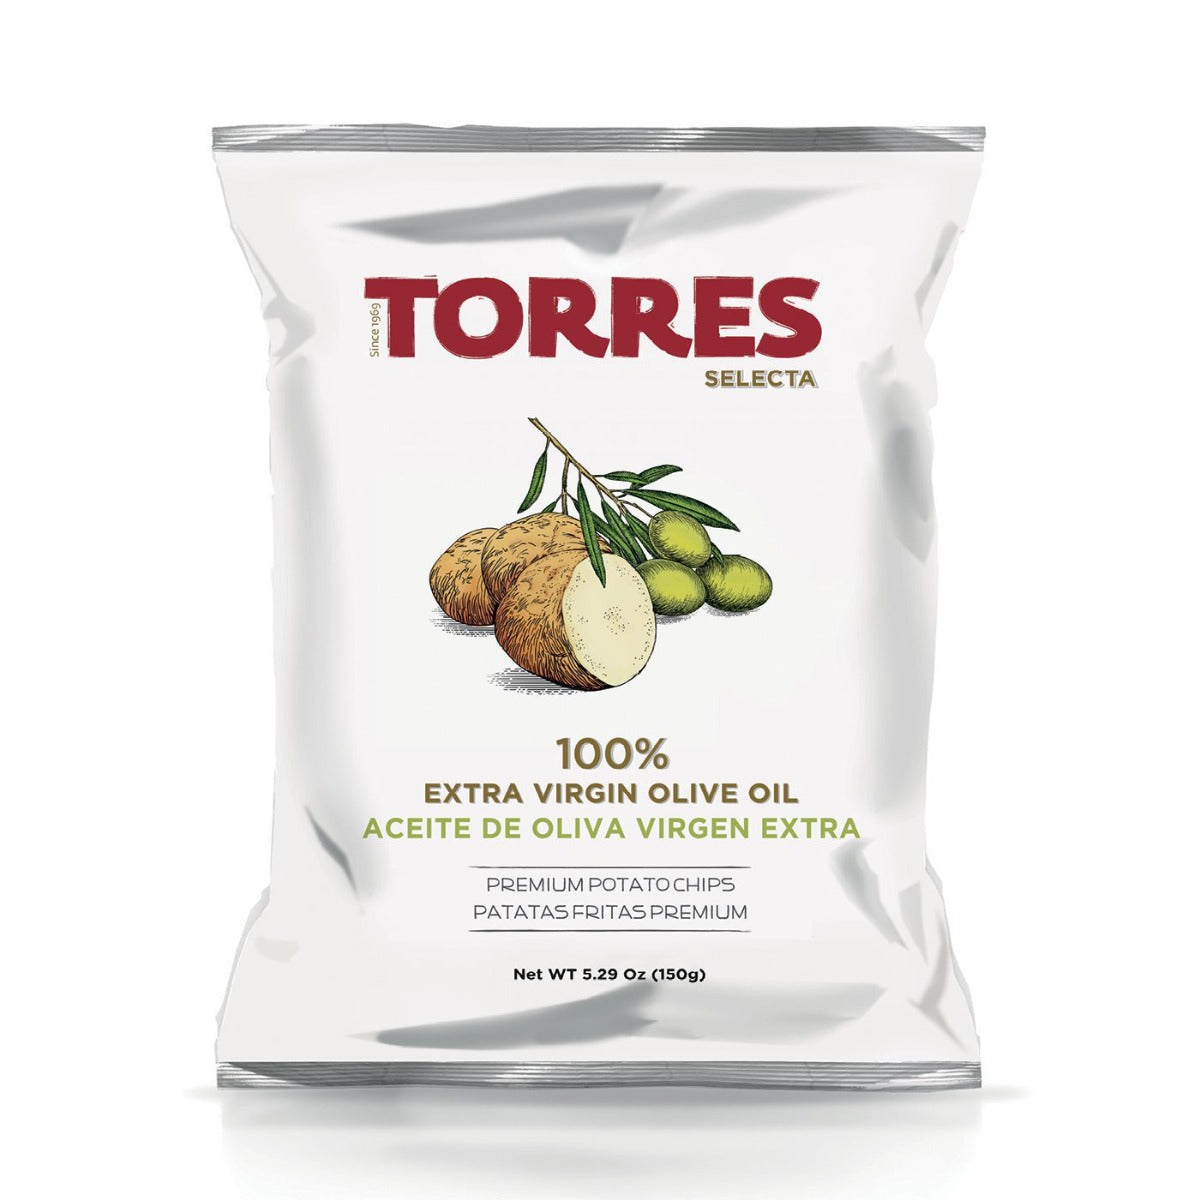 Torres Extra Virgin Olive Oil Crisps 150g